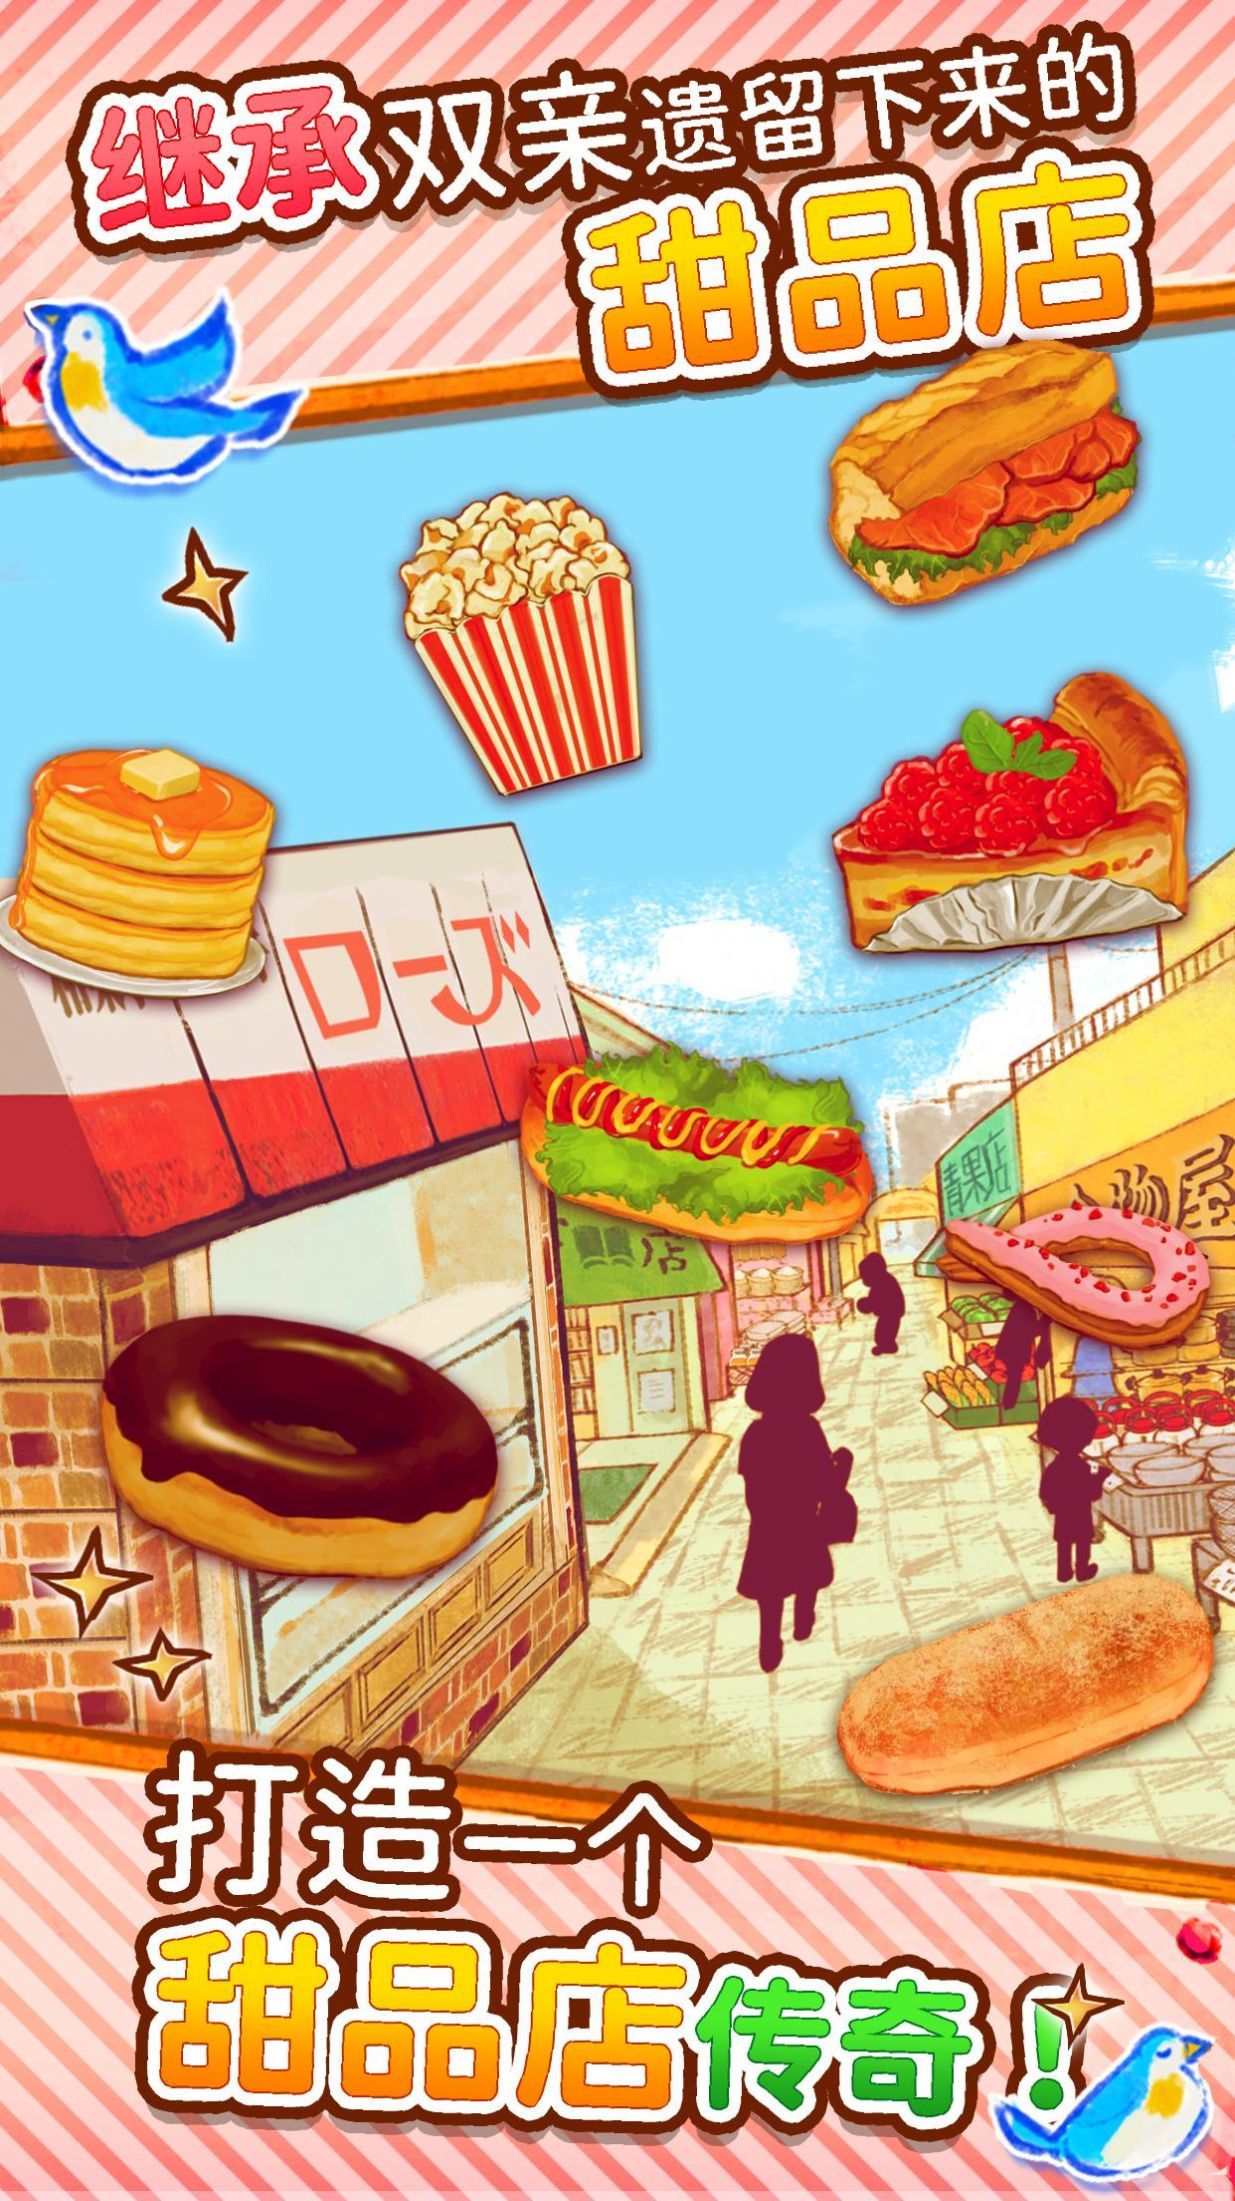 甜点玫瑰面包店中文版官网游戏下载v1.1.131截图